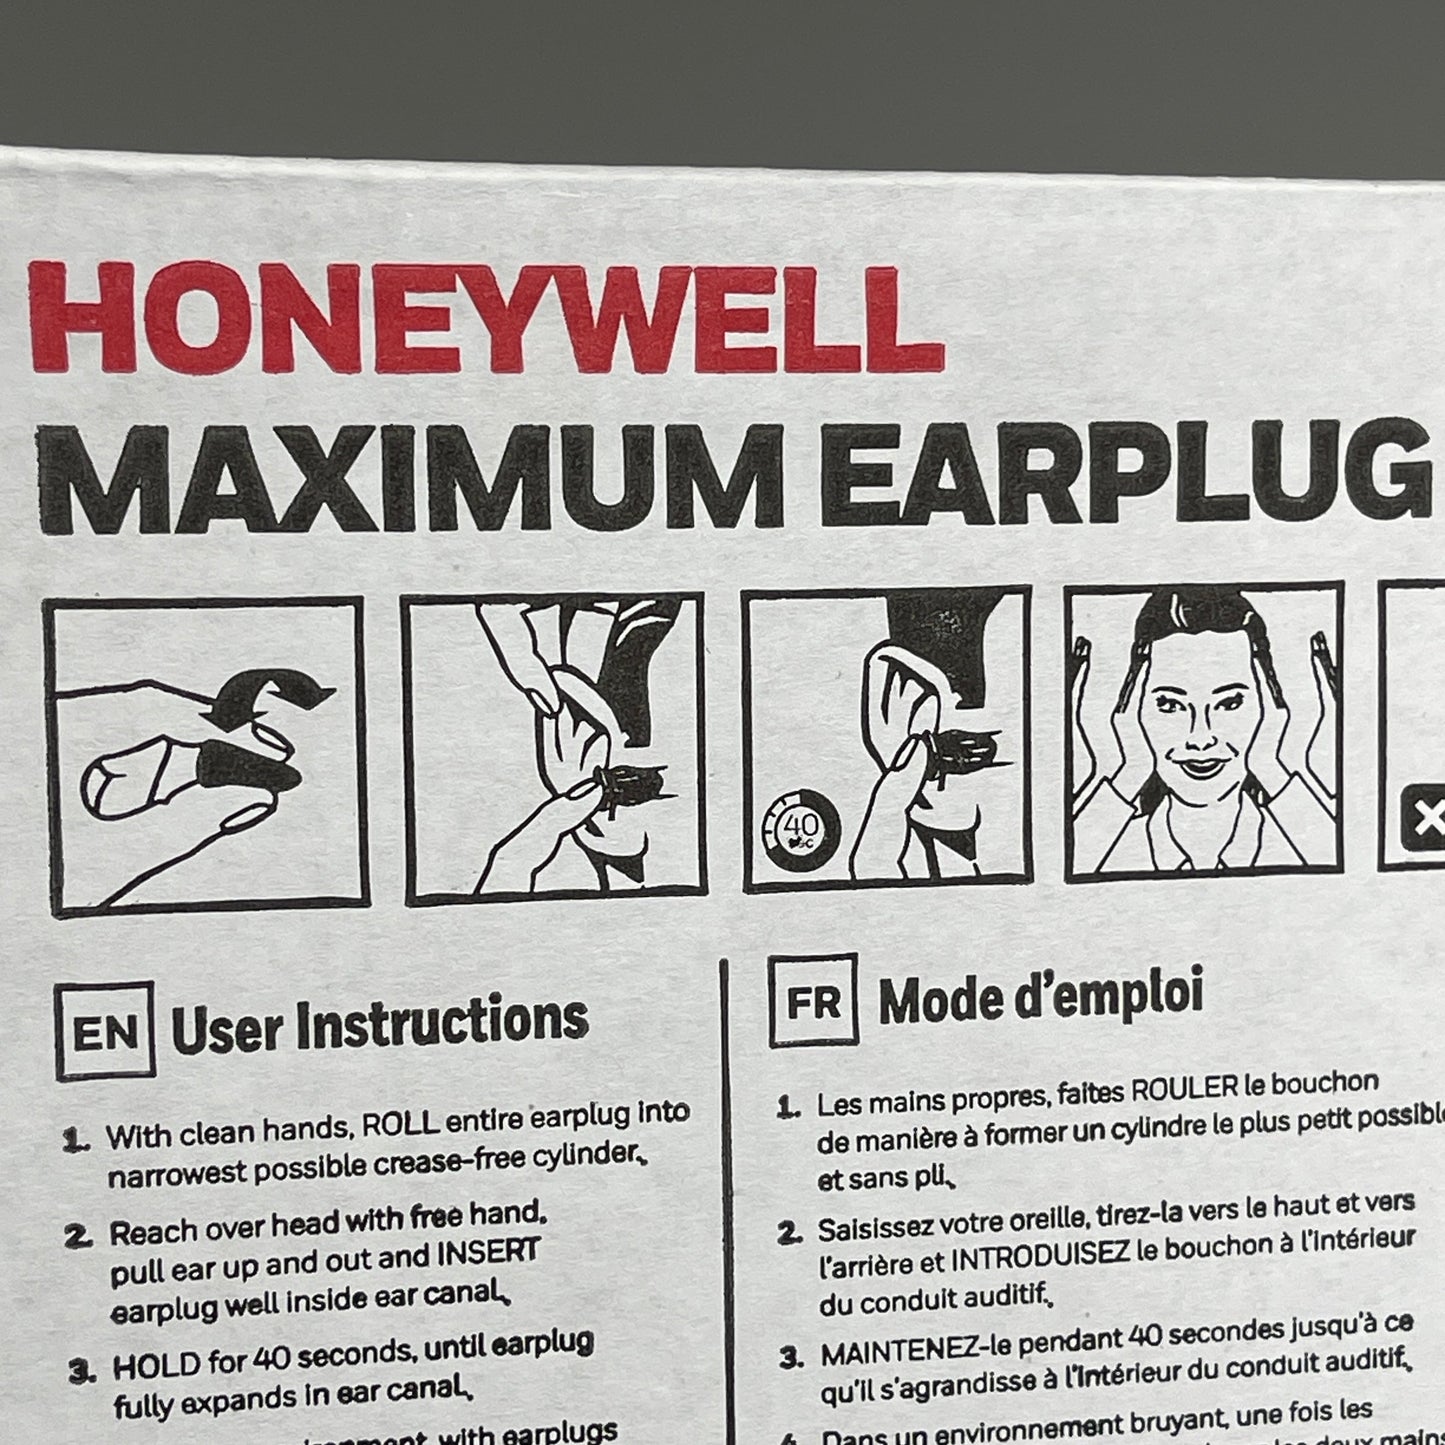 HONEYWELL Maximum Earplugs 100 CORDED PAIRS! Howard Leight 33 Dcb Orange MAX-30 (New)